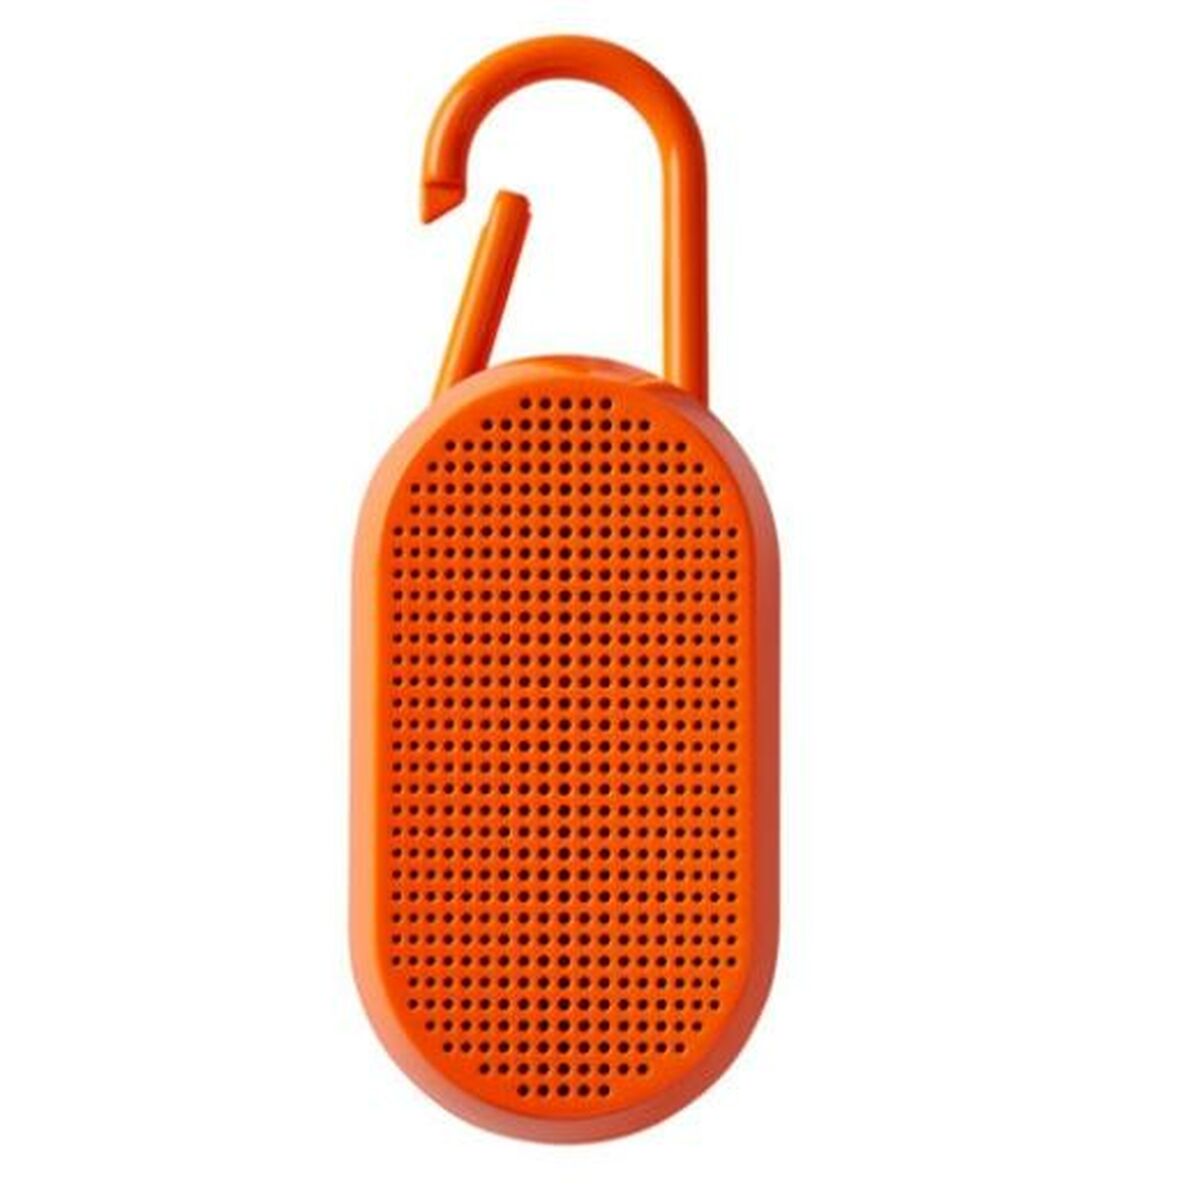 Tragbare Bluetooth-Lautsprecher Lexon Mino T Fluoreszierendes Orange 5 W